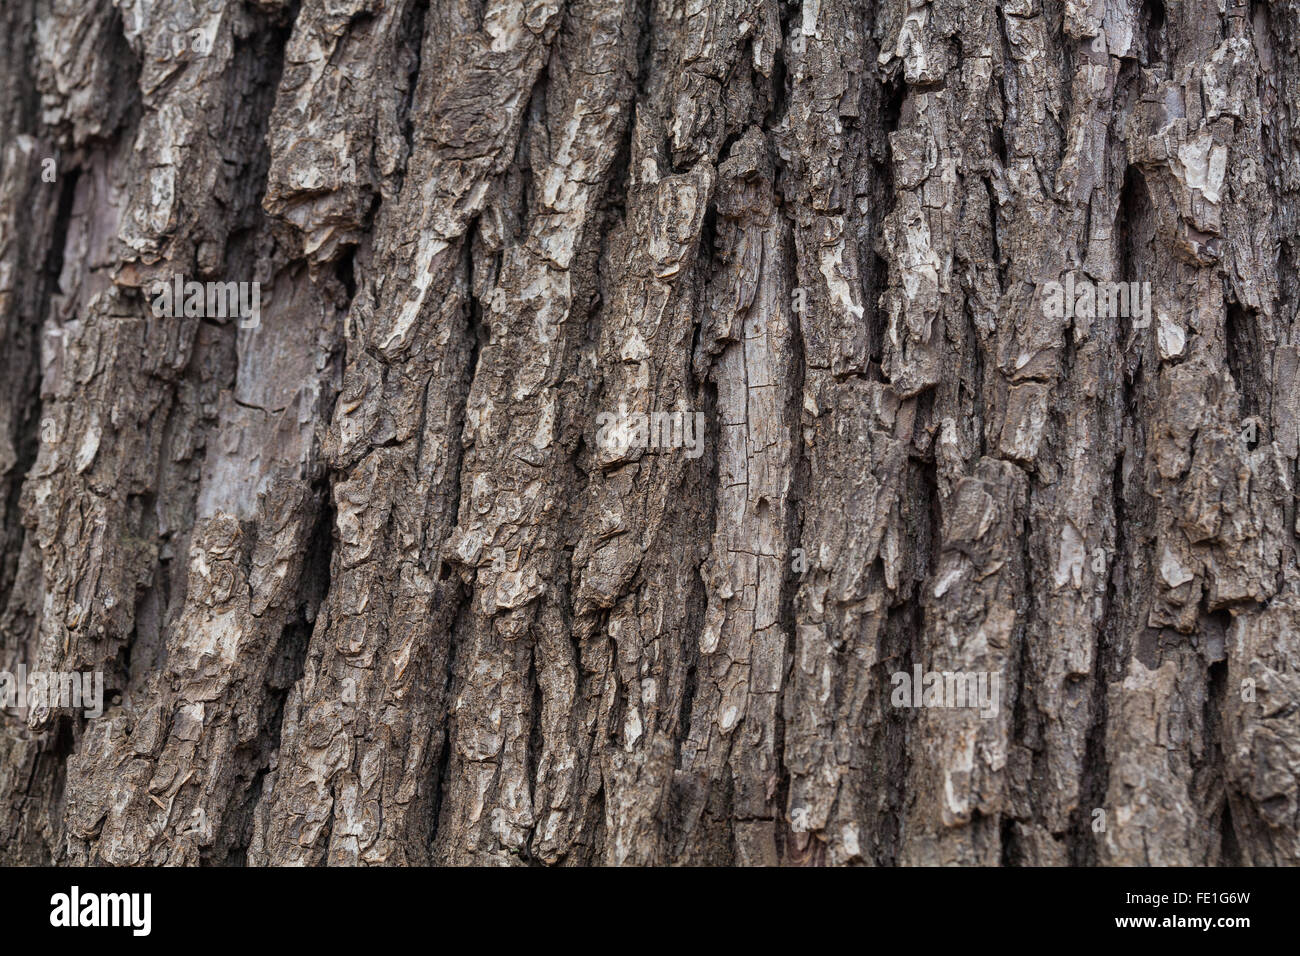 tree bark photo Stock Photo